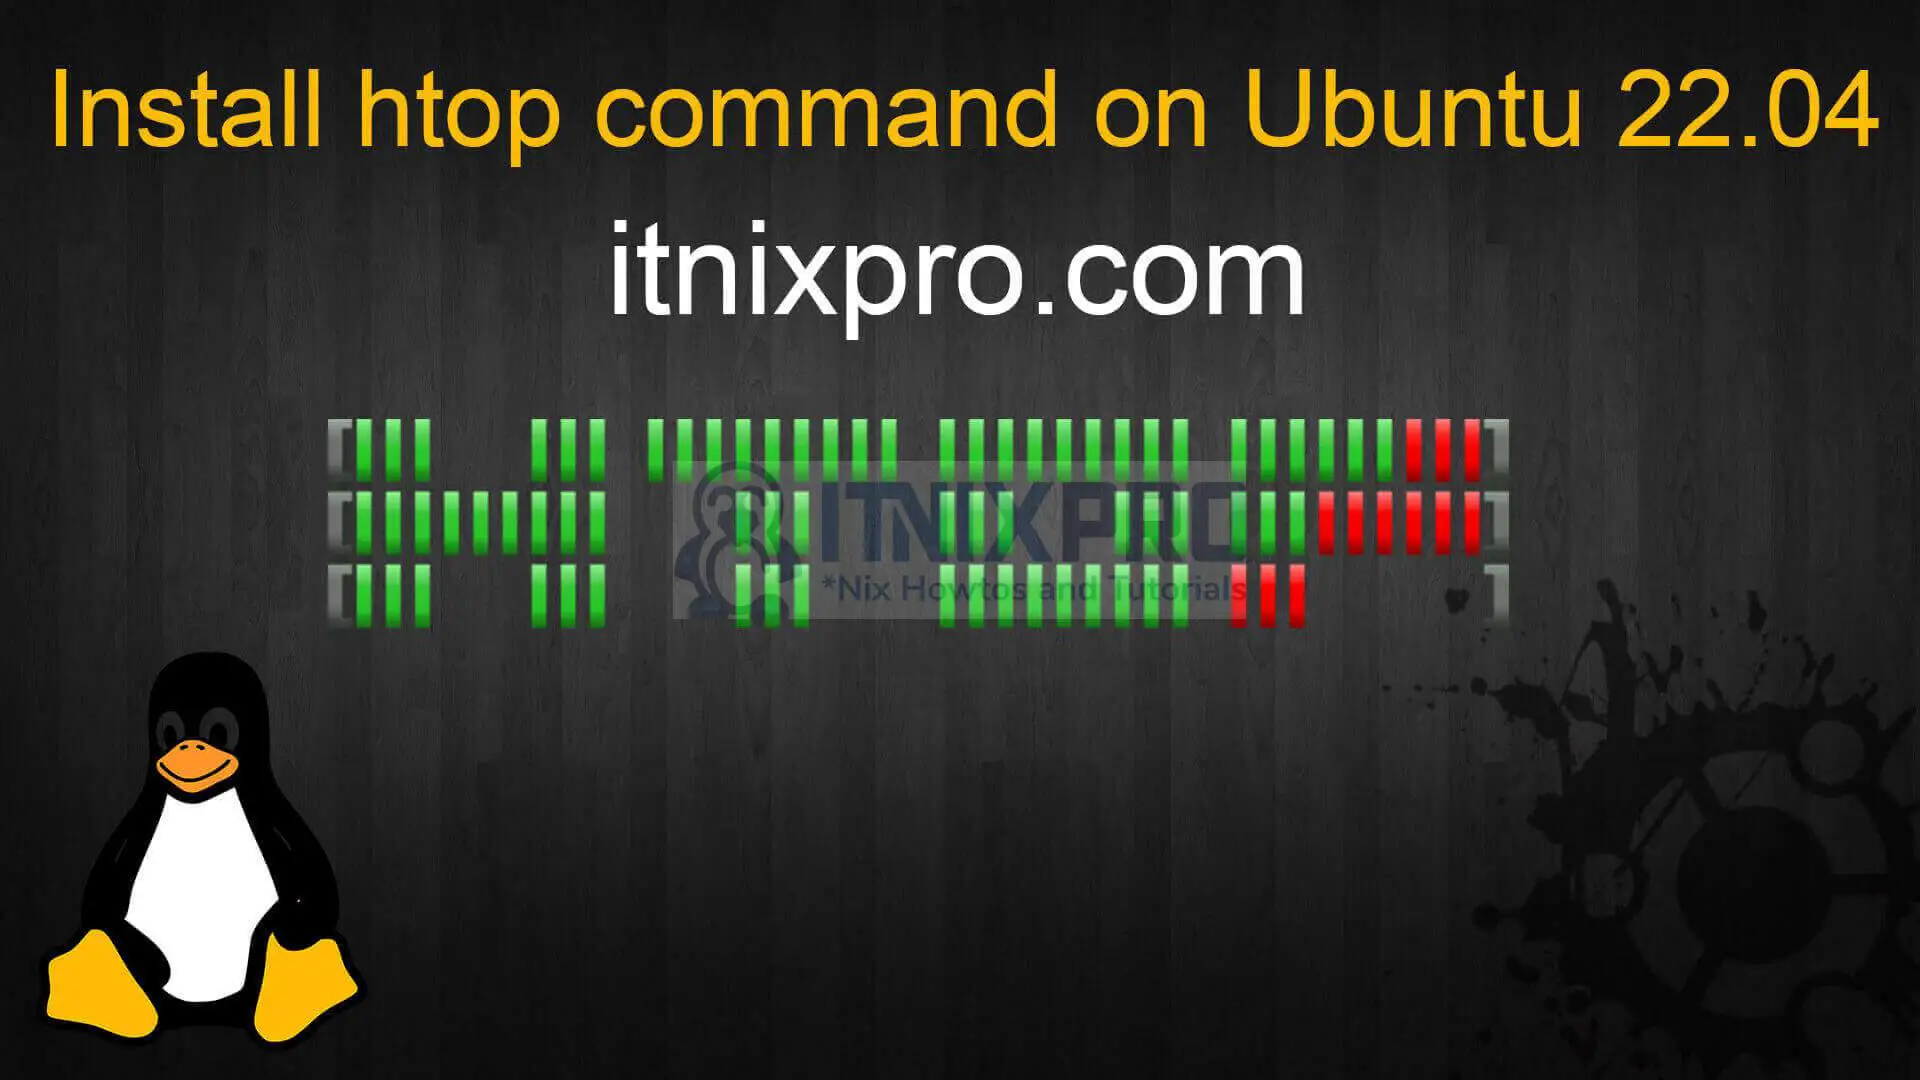 Install htop command on Ubuntu 22.04